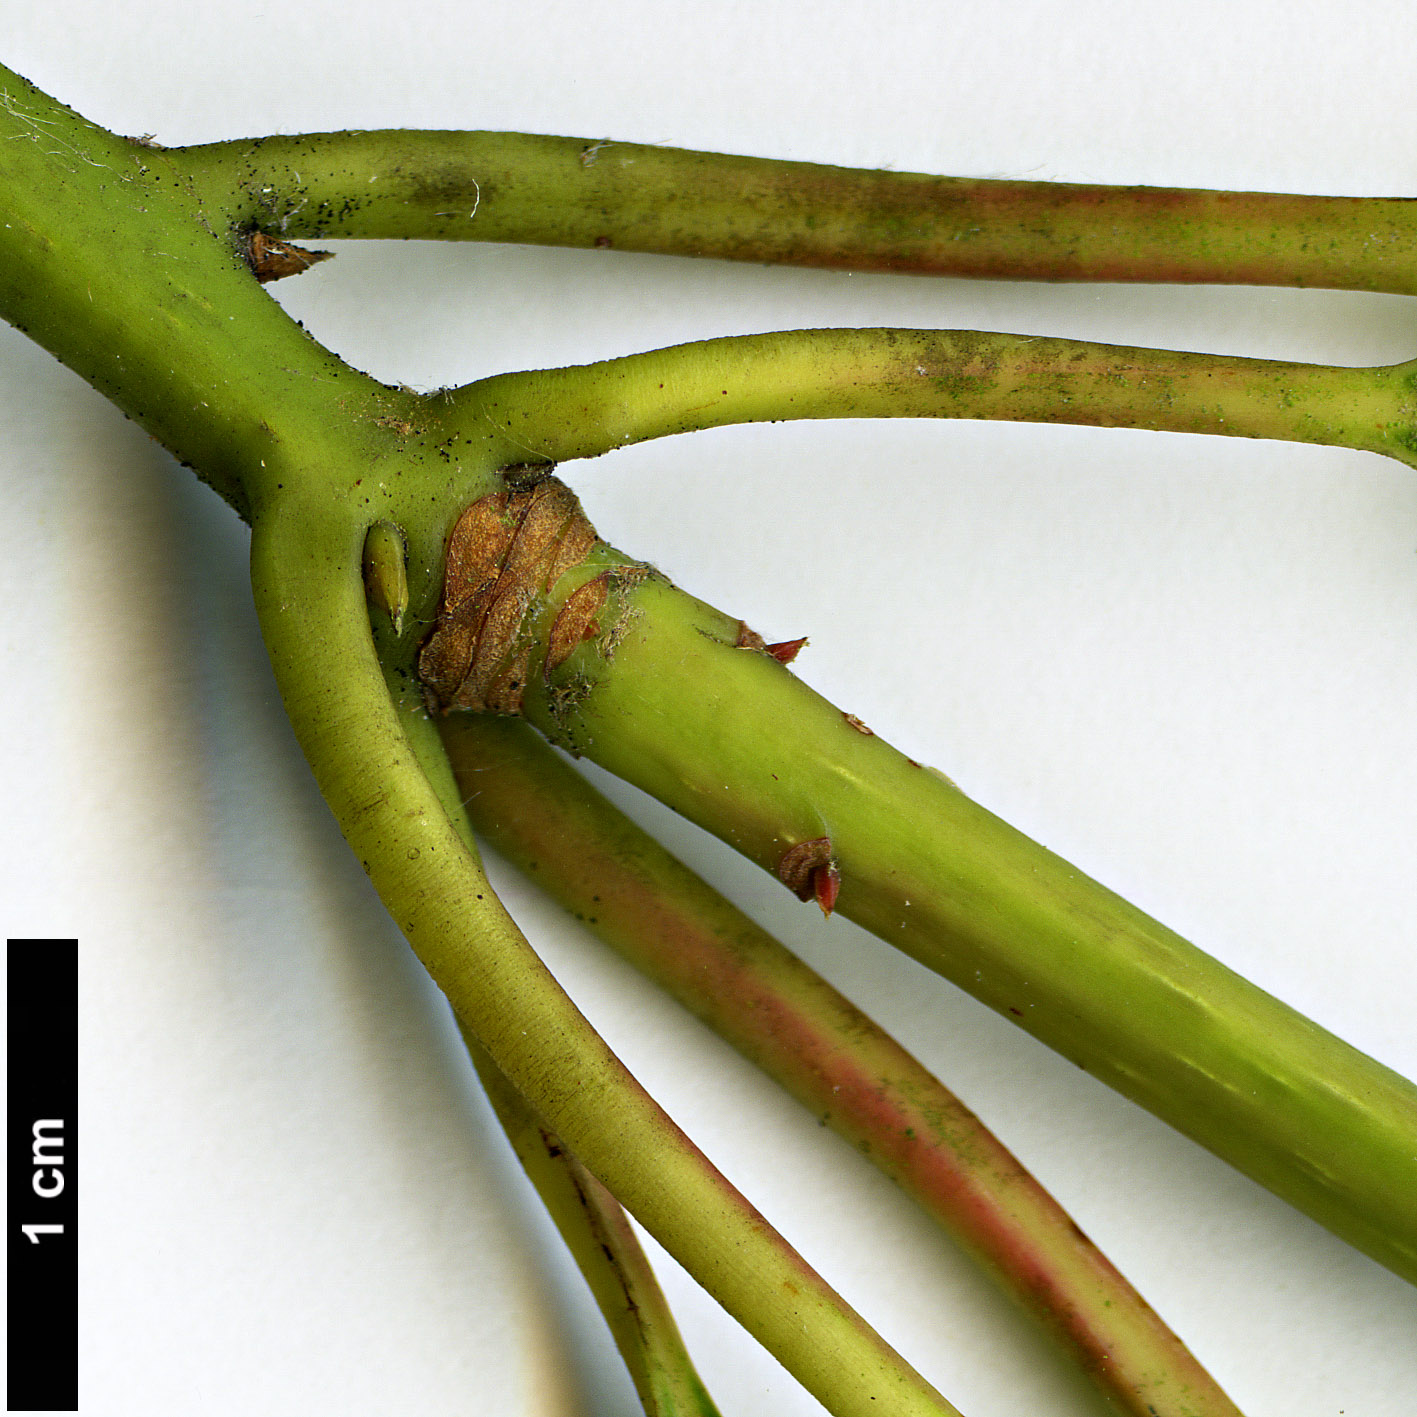 High resolution image: Family: Lauraceae - Genus: Persea - Taxon: ichangensis